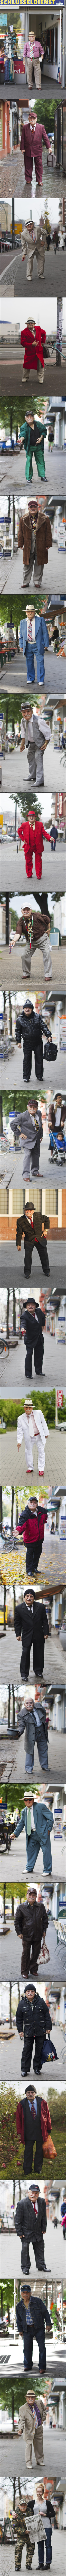 Repéré en 2012 par la photographe Zoe Spawton, Ali est un tailleur germano-turc qui avait à coeur de changer de costume tous les jours pour se rendre à son travail. 
Photographié quotidiennement durant trois ans, ceci est un aperçu de son (grand) vestiaire.
http://www.zoespawton.com/